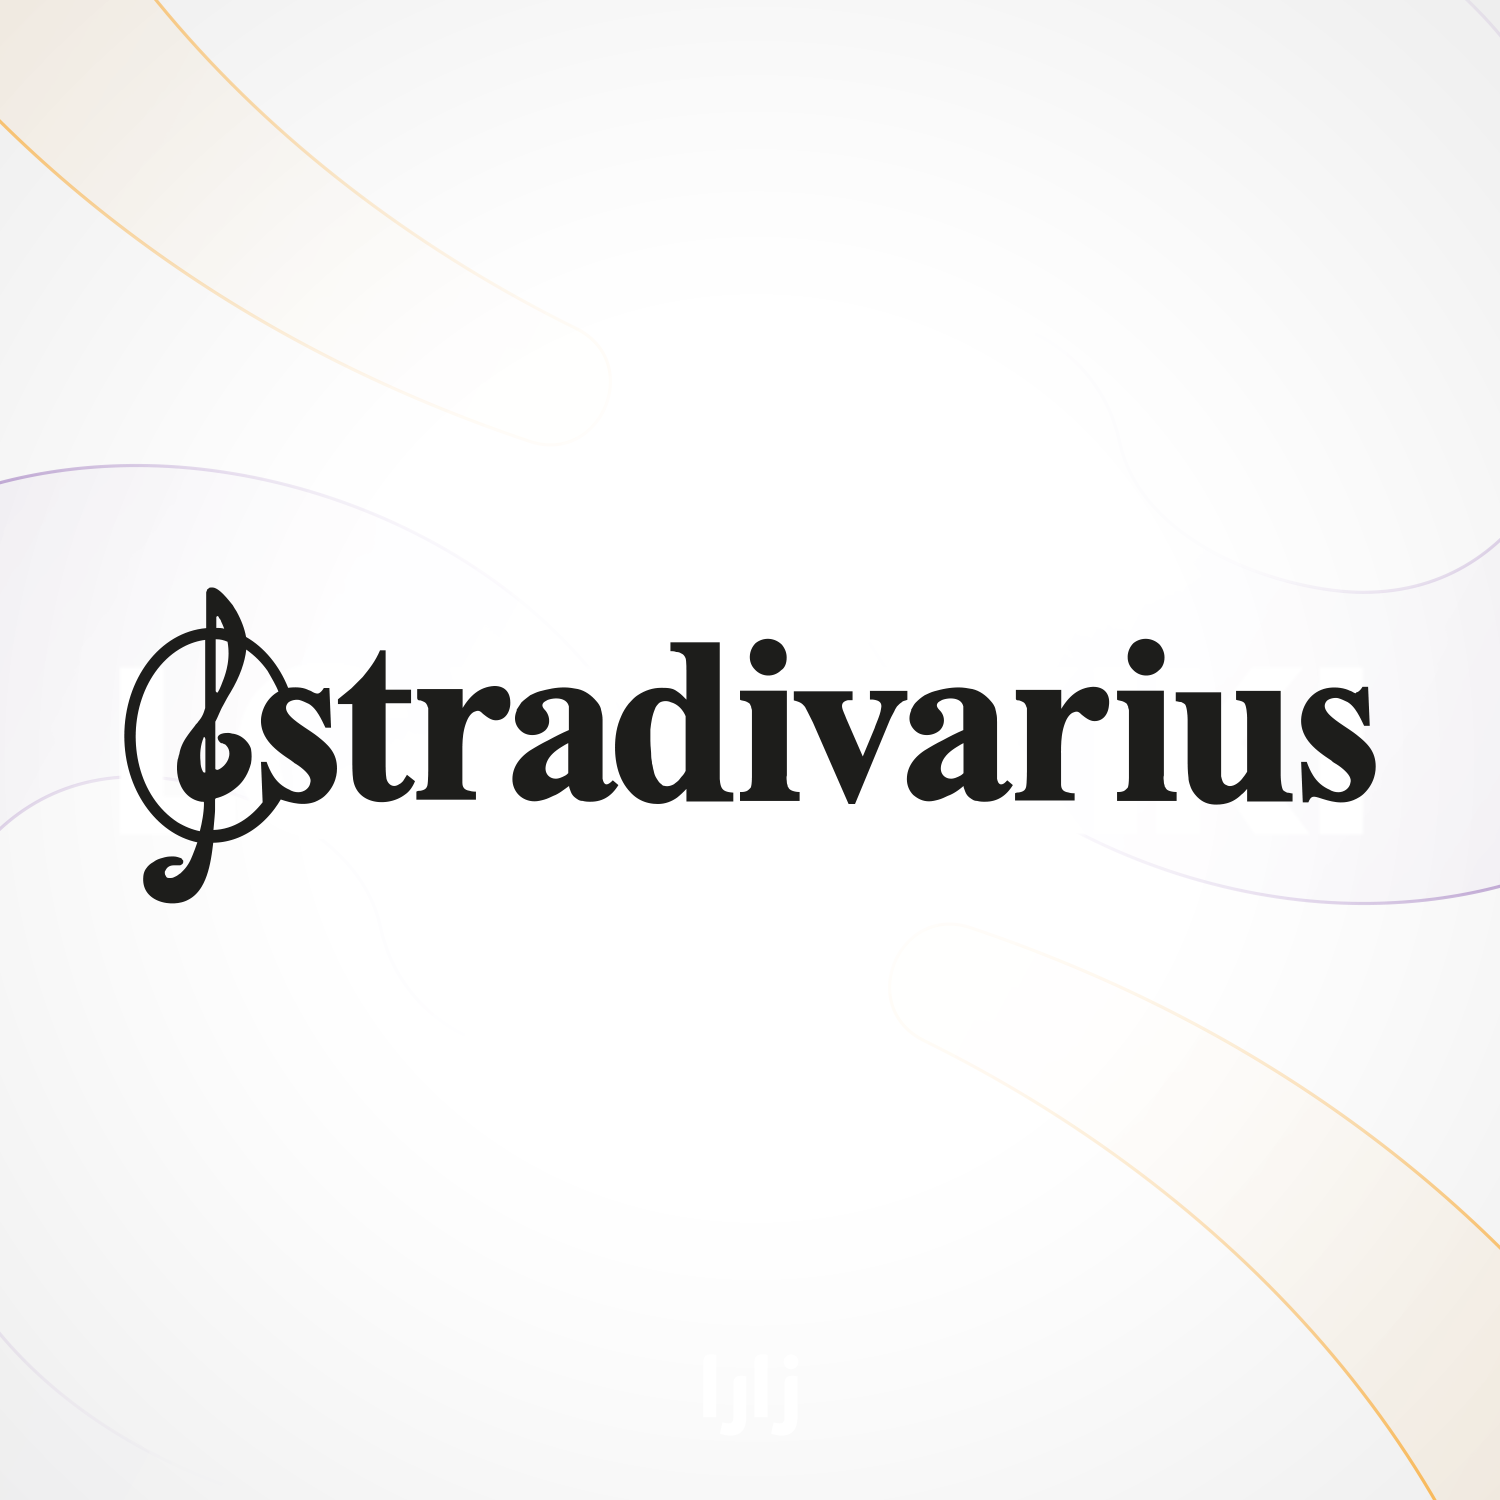 ستراديفاريوس